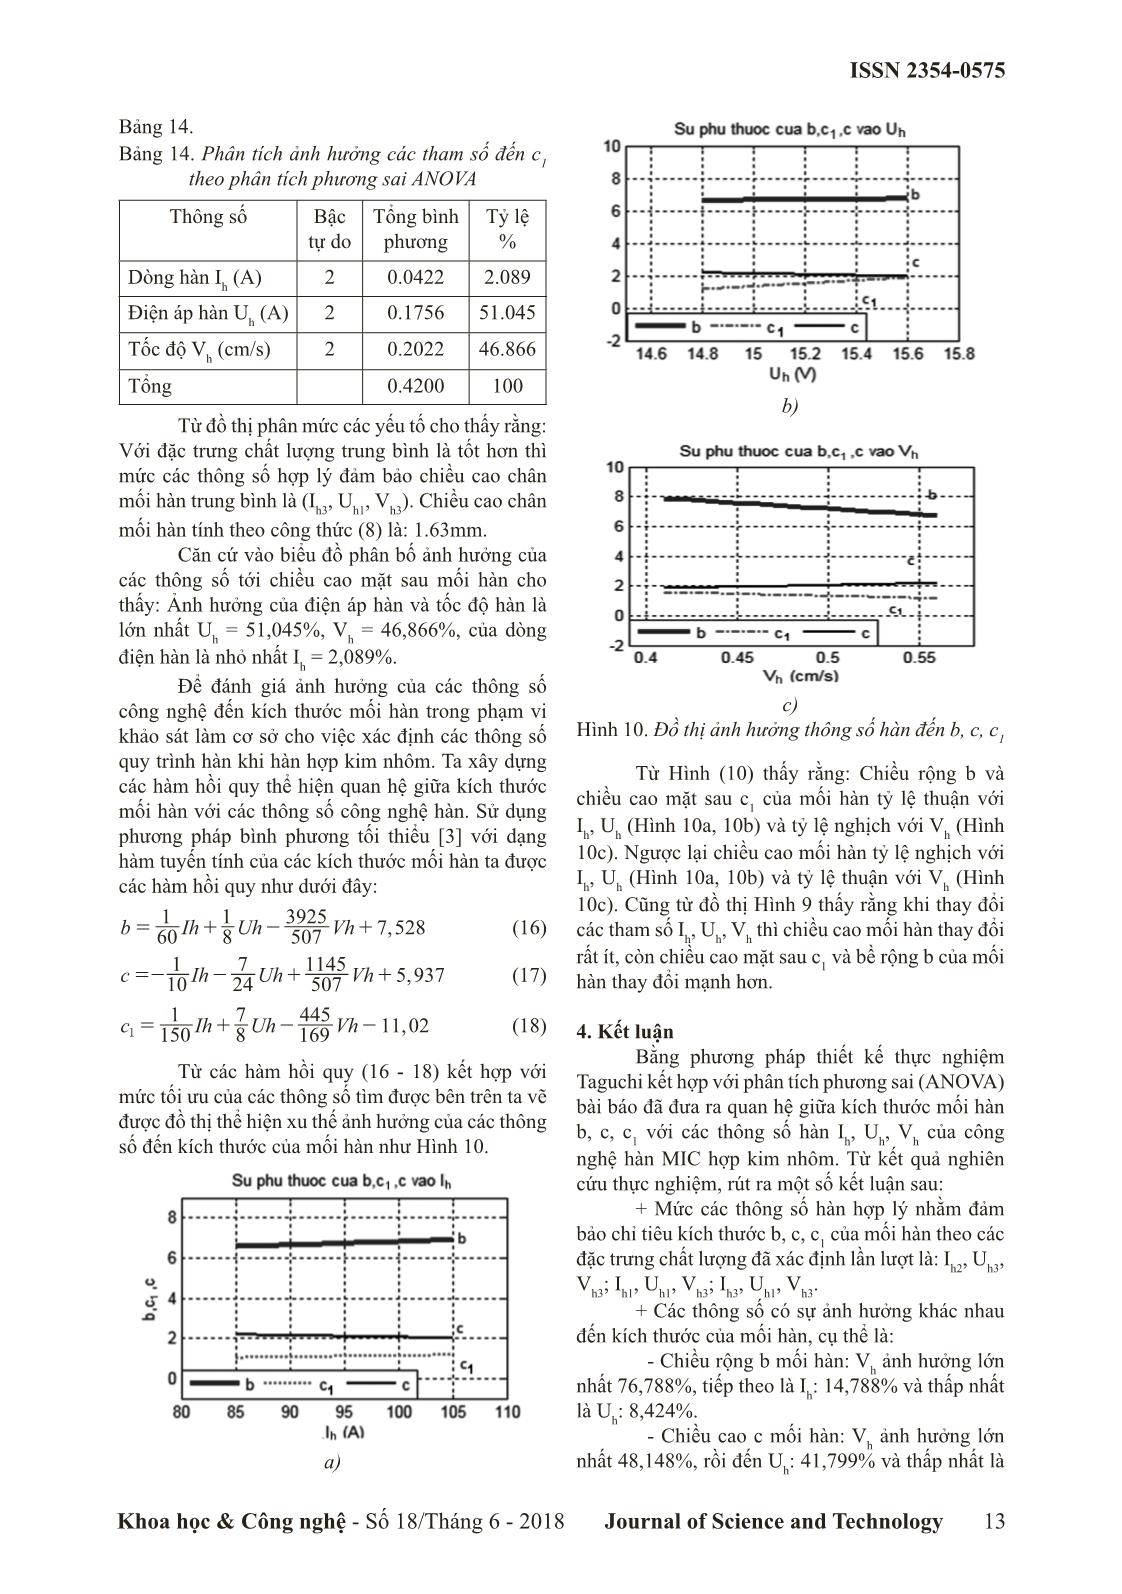 Tối ưu hóa thông số hàn để đảm bảo kích thước mối hàn trong hàn mig nhôm bằng phương pháp thiết kế thực nghiệm Taguchi trang 6